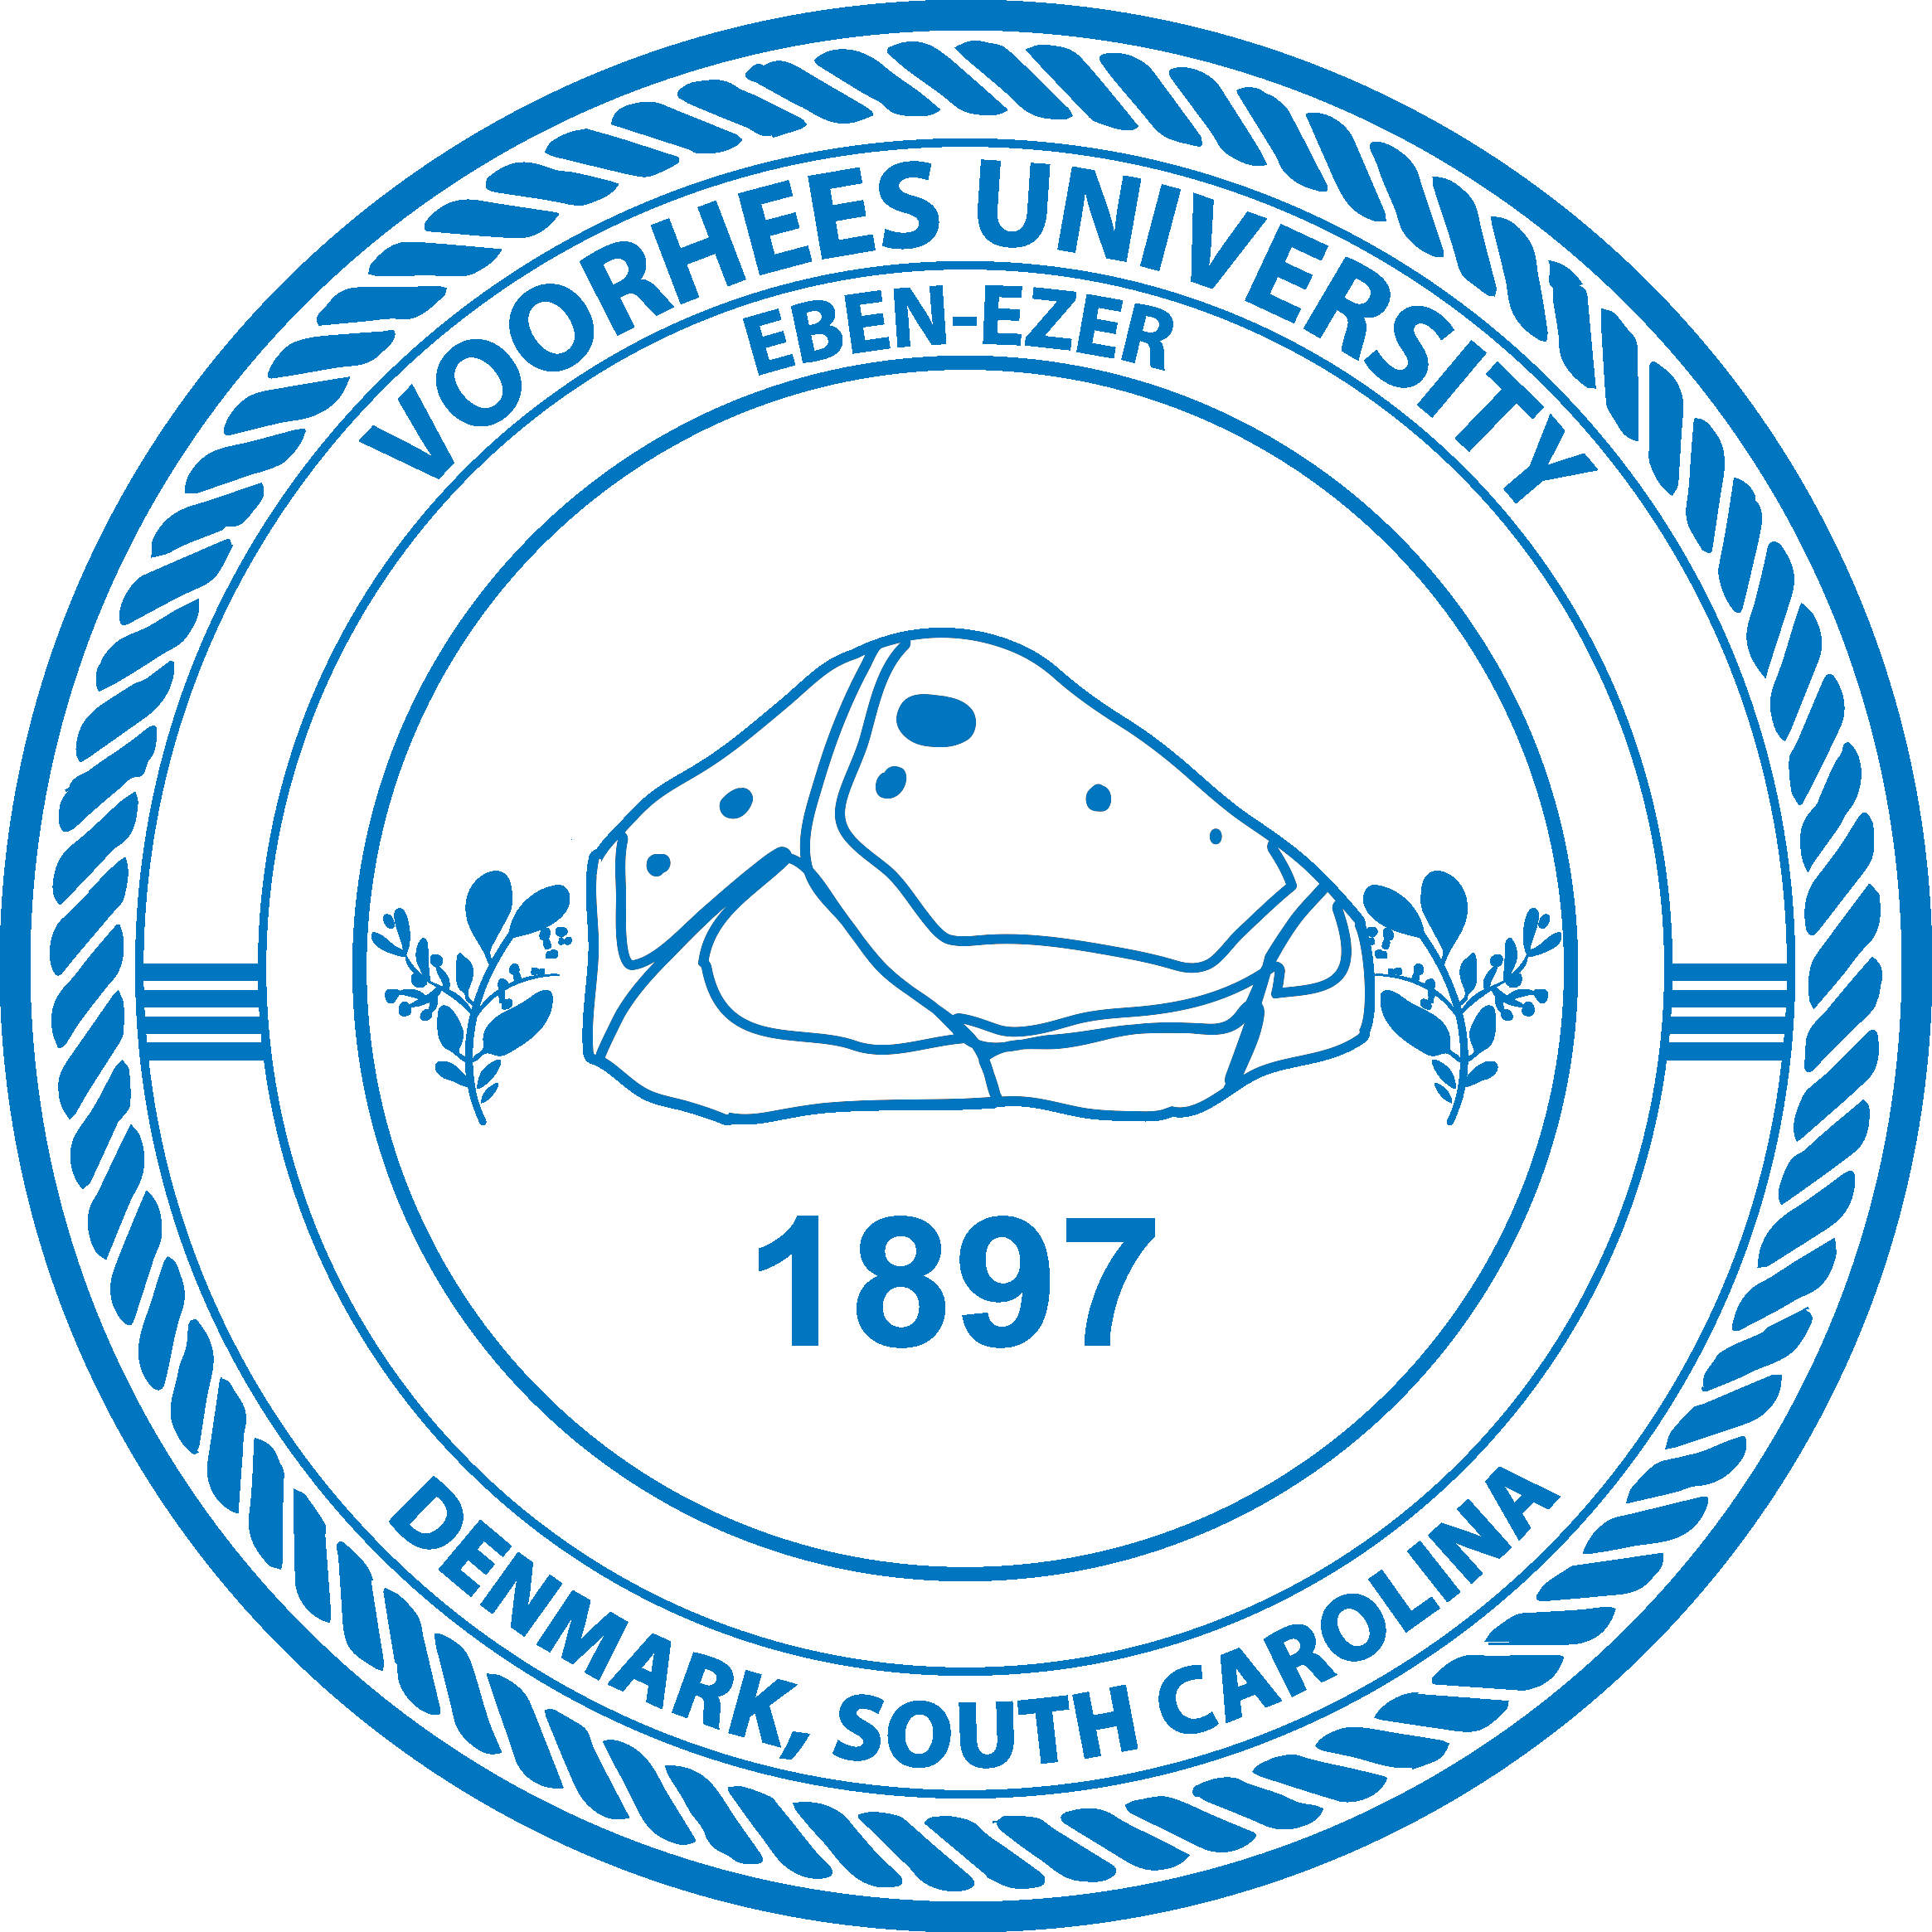 VU seal 2022 in blue